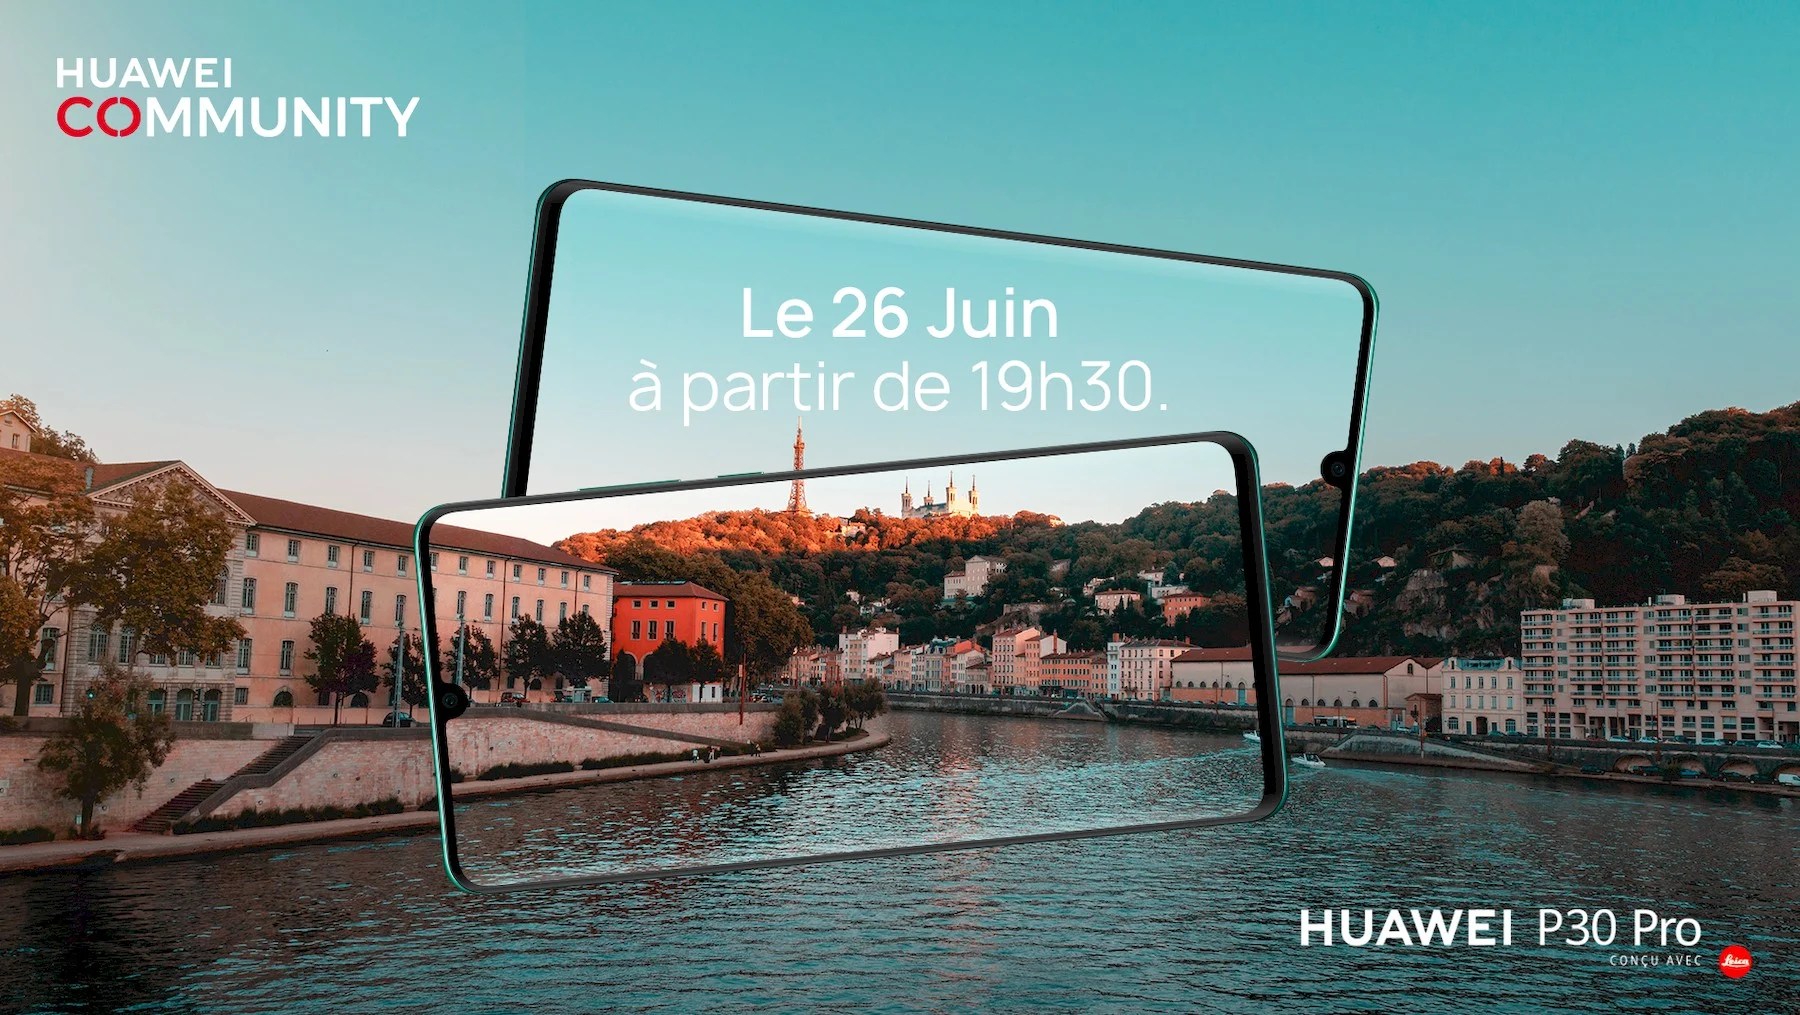 Fans de Huawei ? La nouvelle soirée Huawei Community Lyon aura lieu le 26 juin prochain